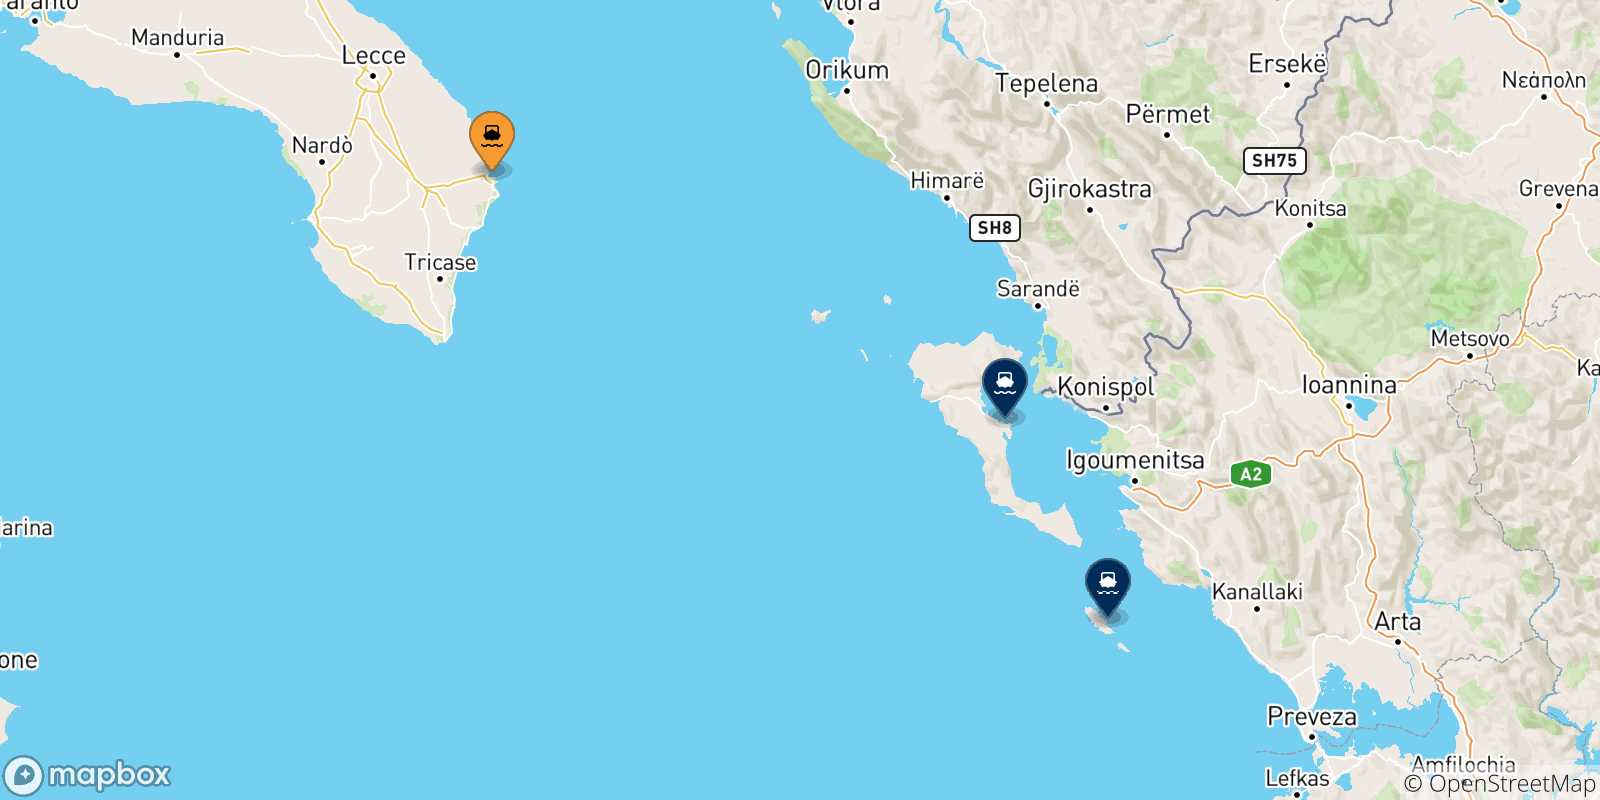 Mappa delle possibili rotte tra Otranto e le Isole Ionie